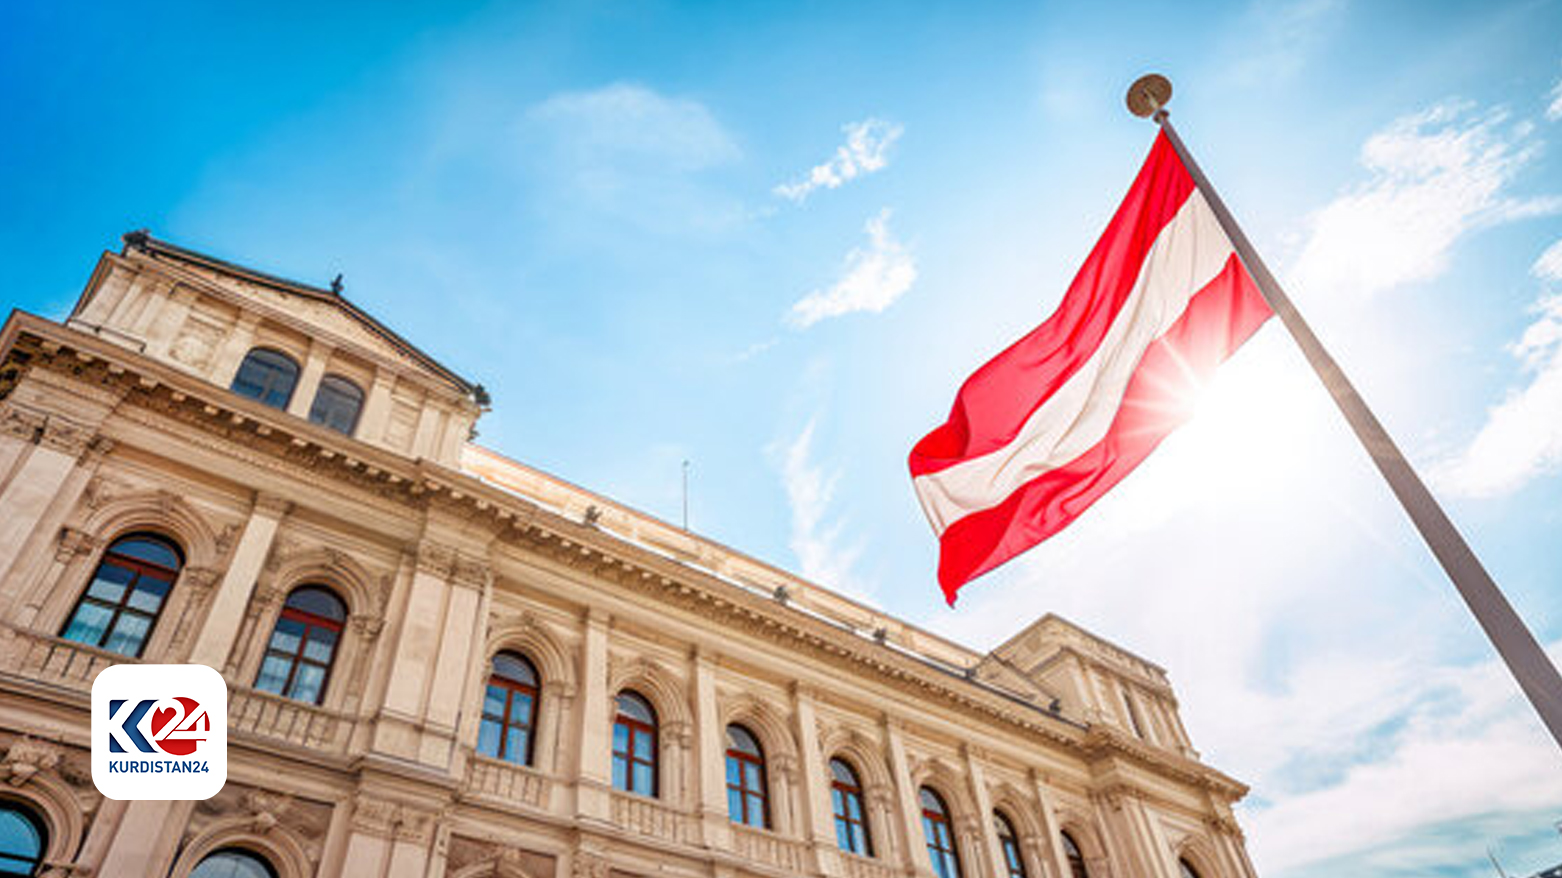 علم دولة النمسا